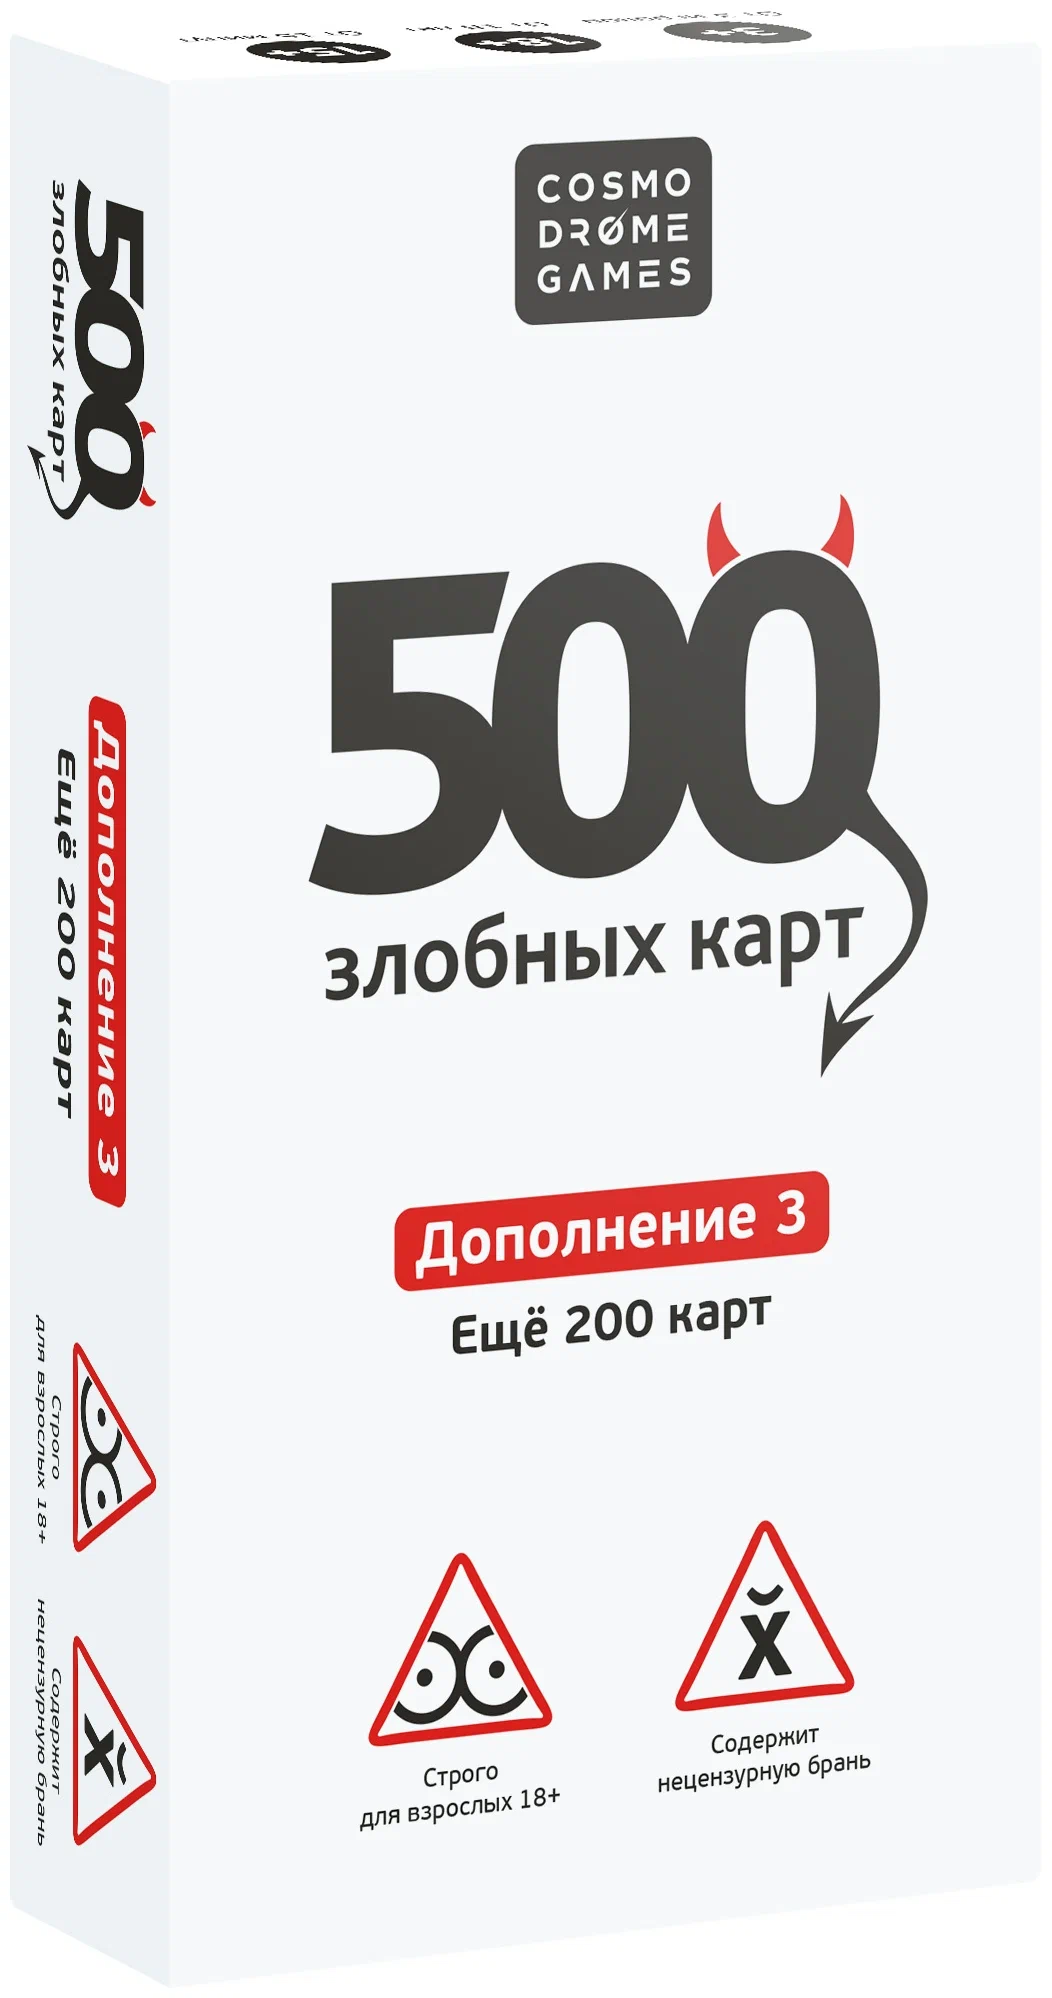 Cosmodrome Games Настольная игра "500 Злобных карт" ДОПОЛНЕНИЕ белое